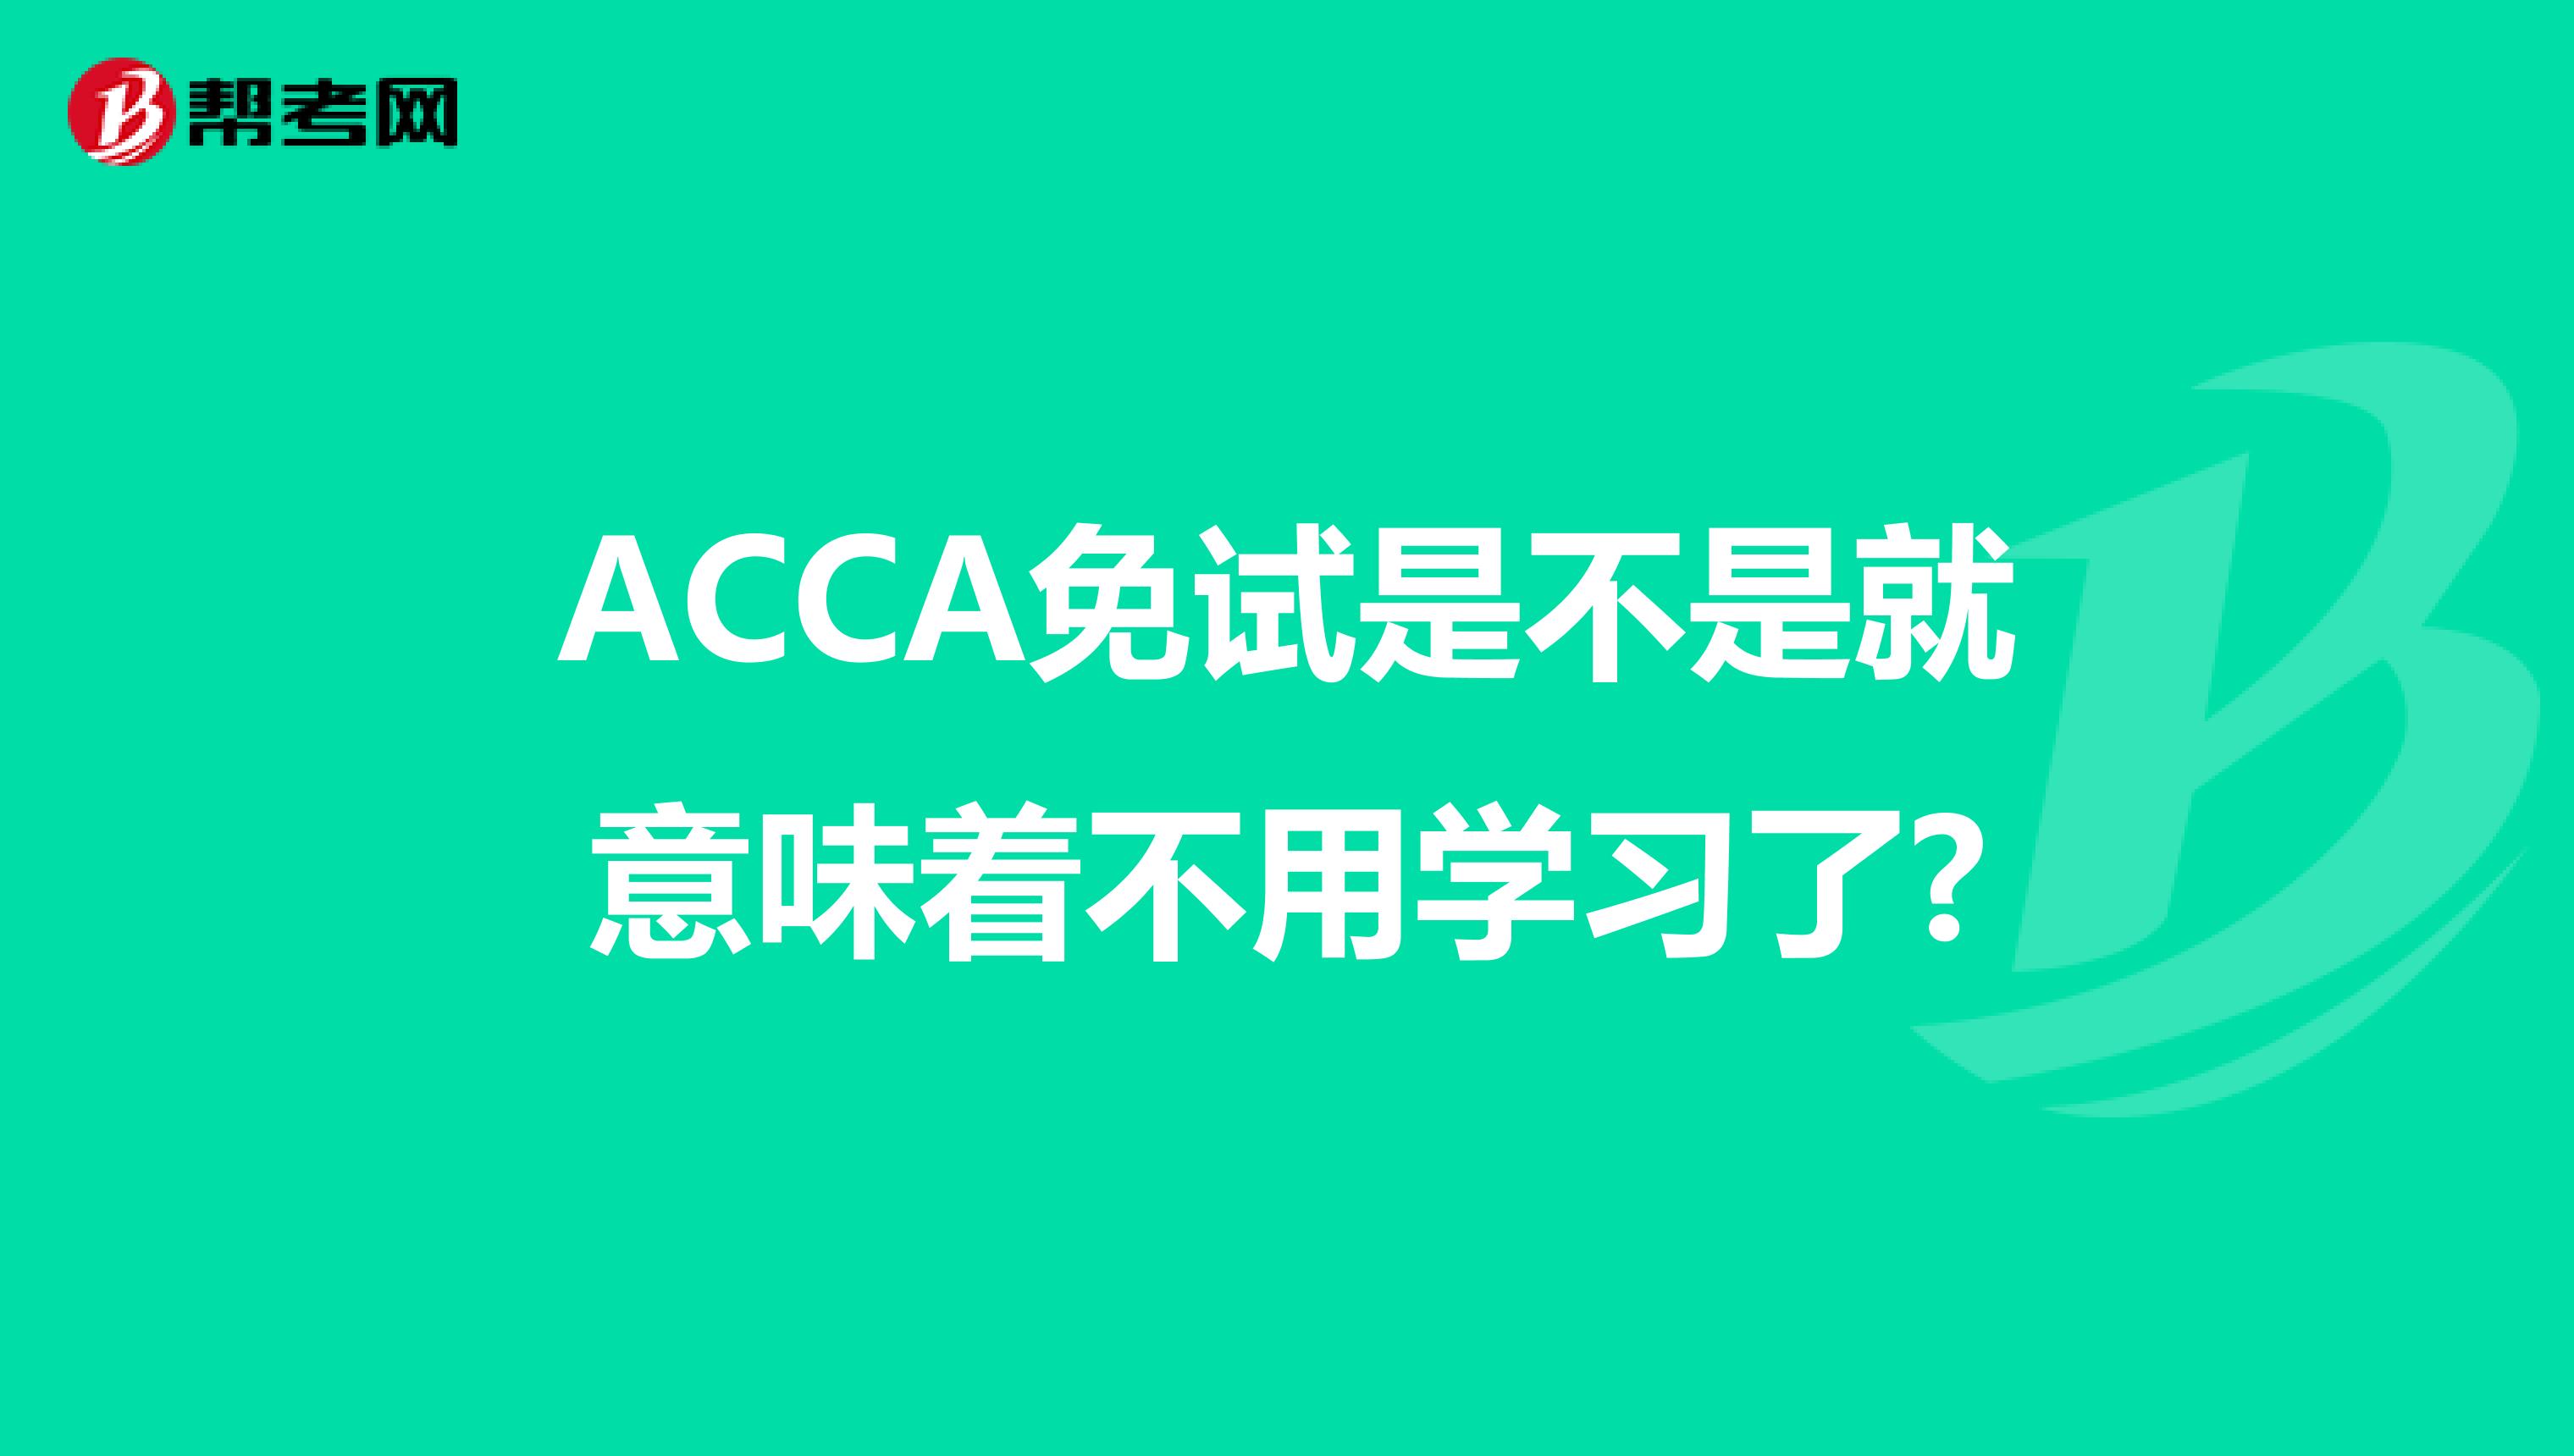 ACCA免试是不是就意味着不用学习了?